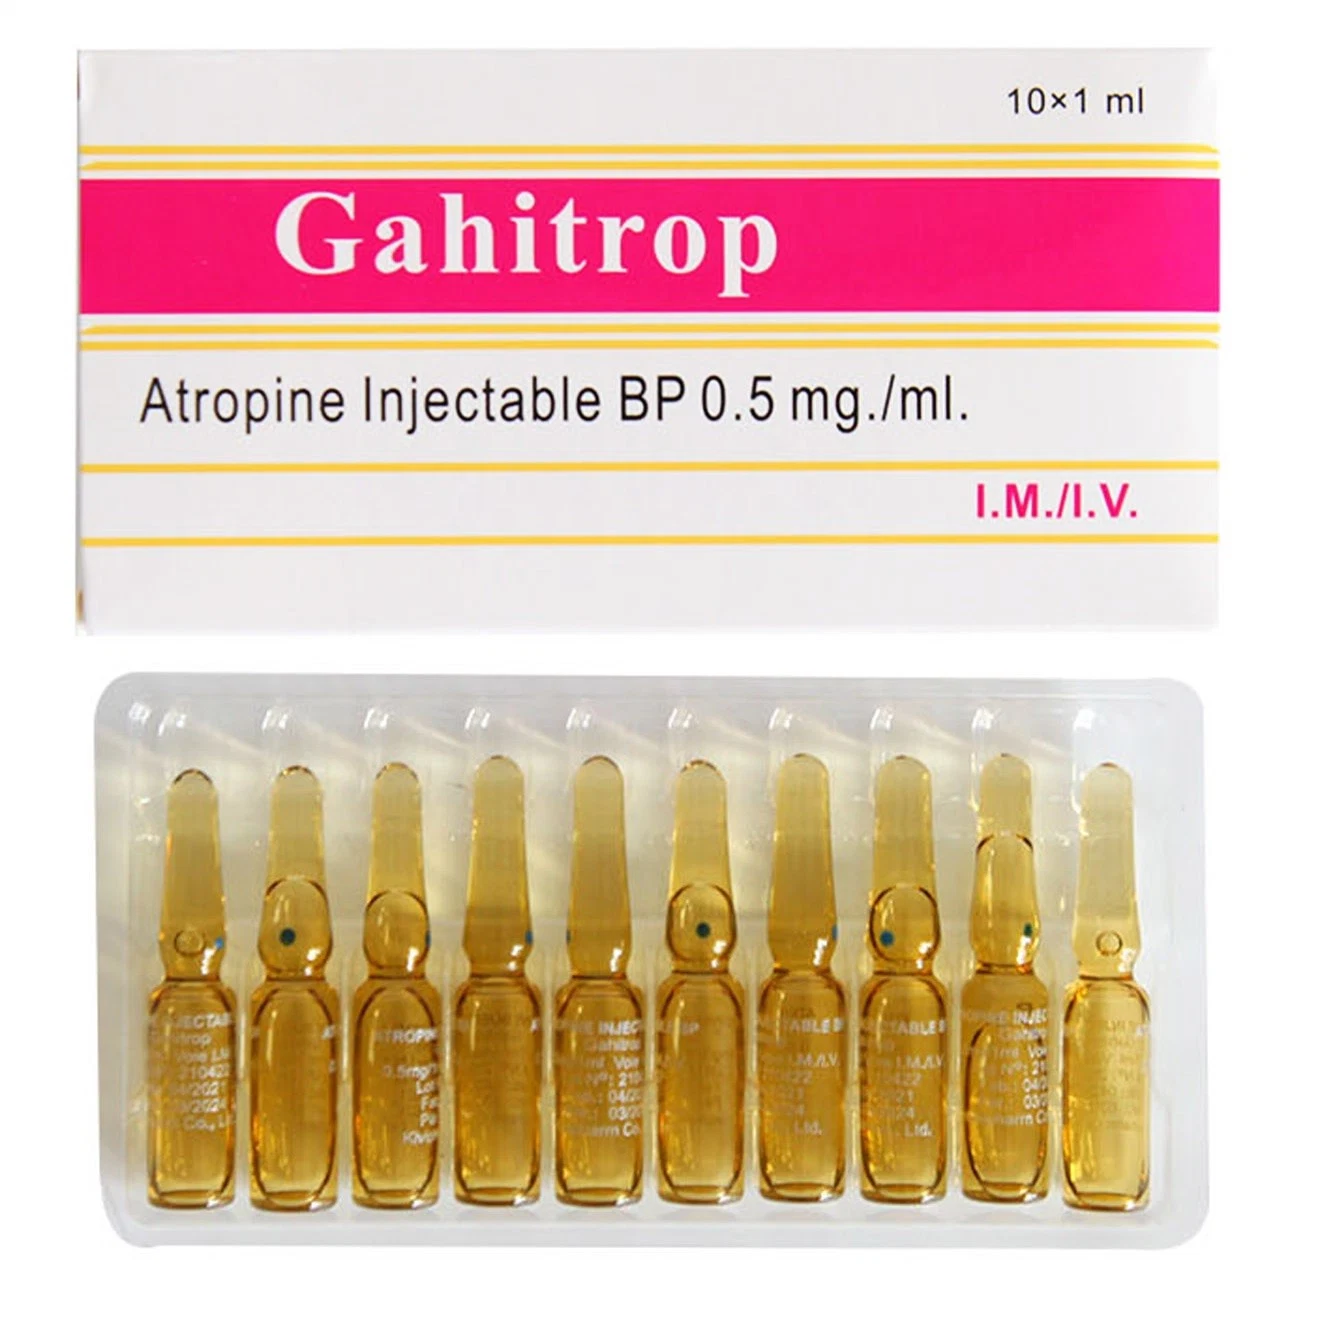 Atropine injection médecine pharmaceutique